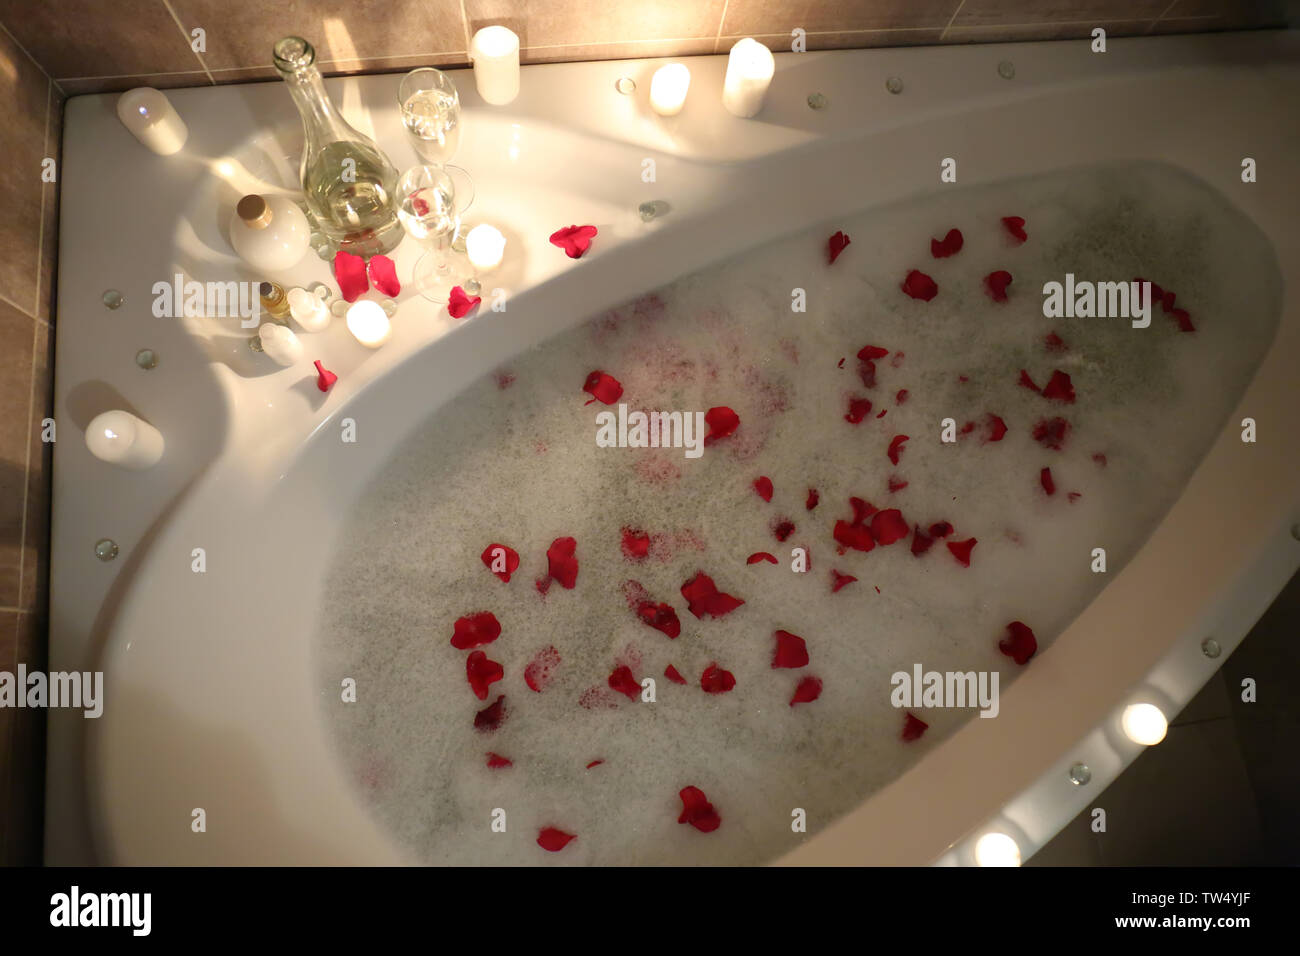 Baignoire Remplie De Mousse Et De Petales De Rose Prepare Pour Date Romantique Photo Stock Alamy